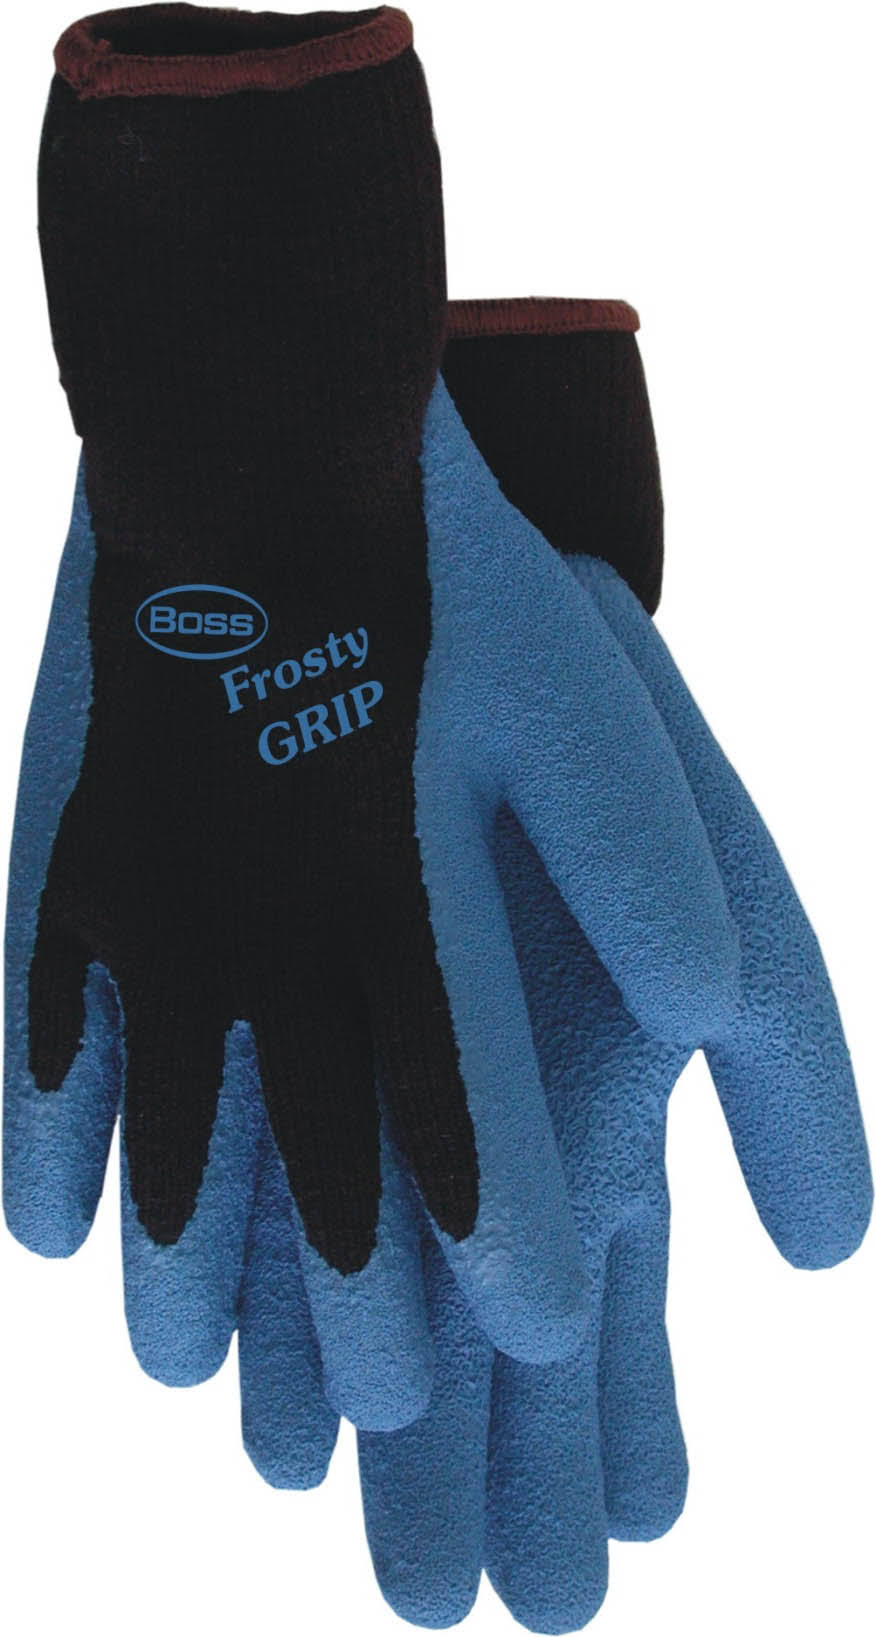 Hugo Boss Frost Grip Gloves - Blue, Medium